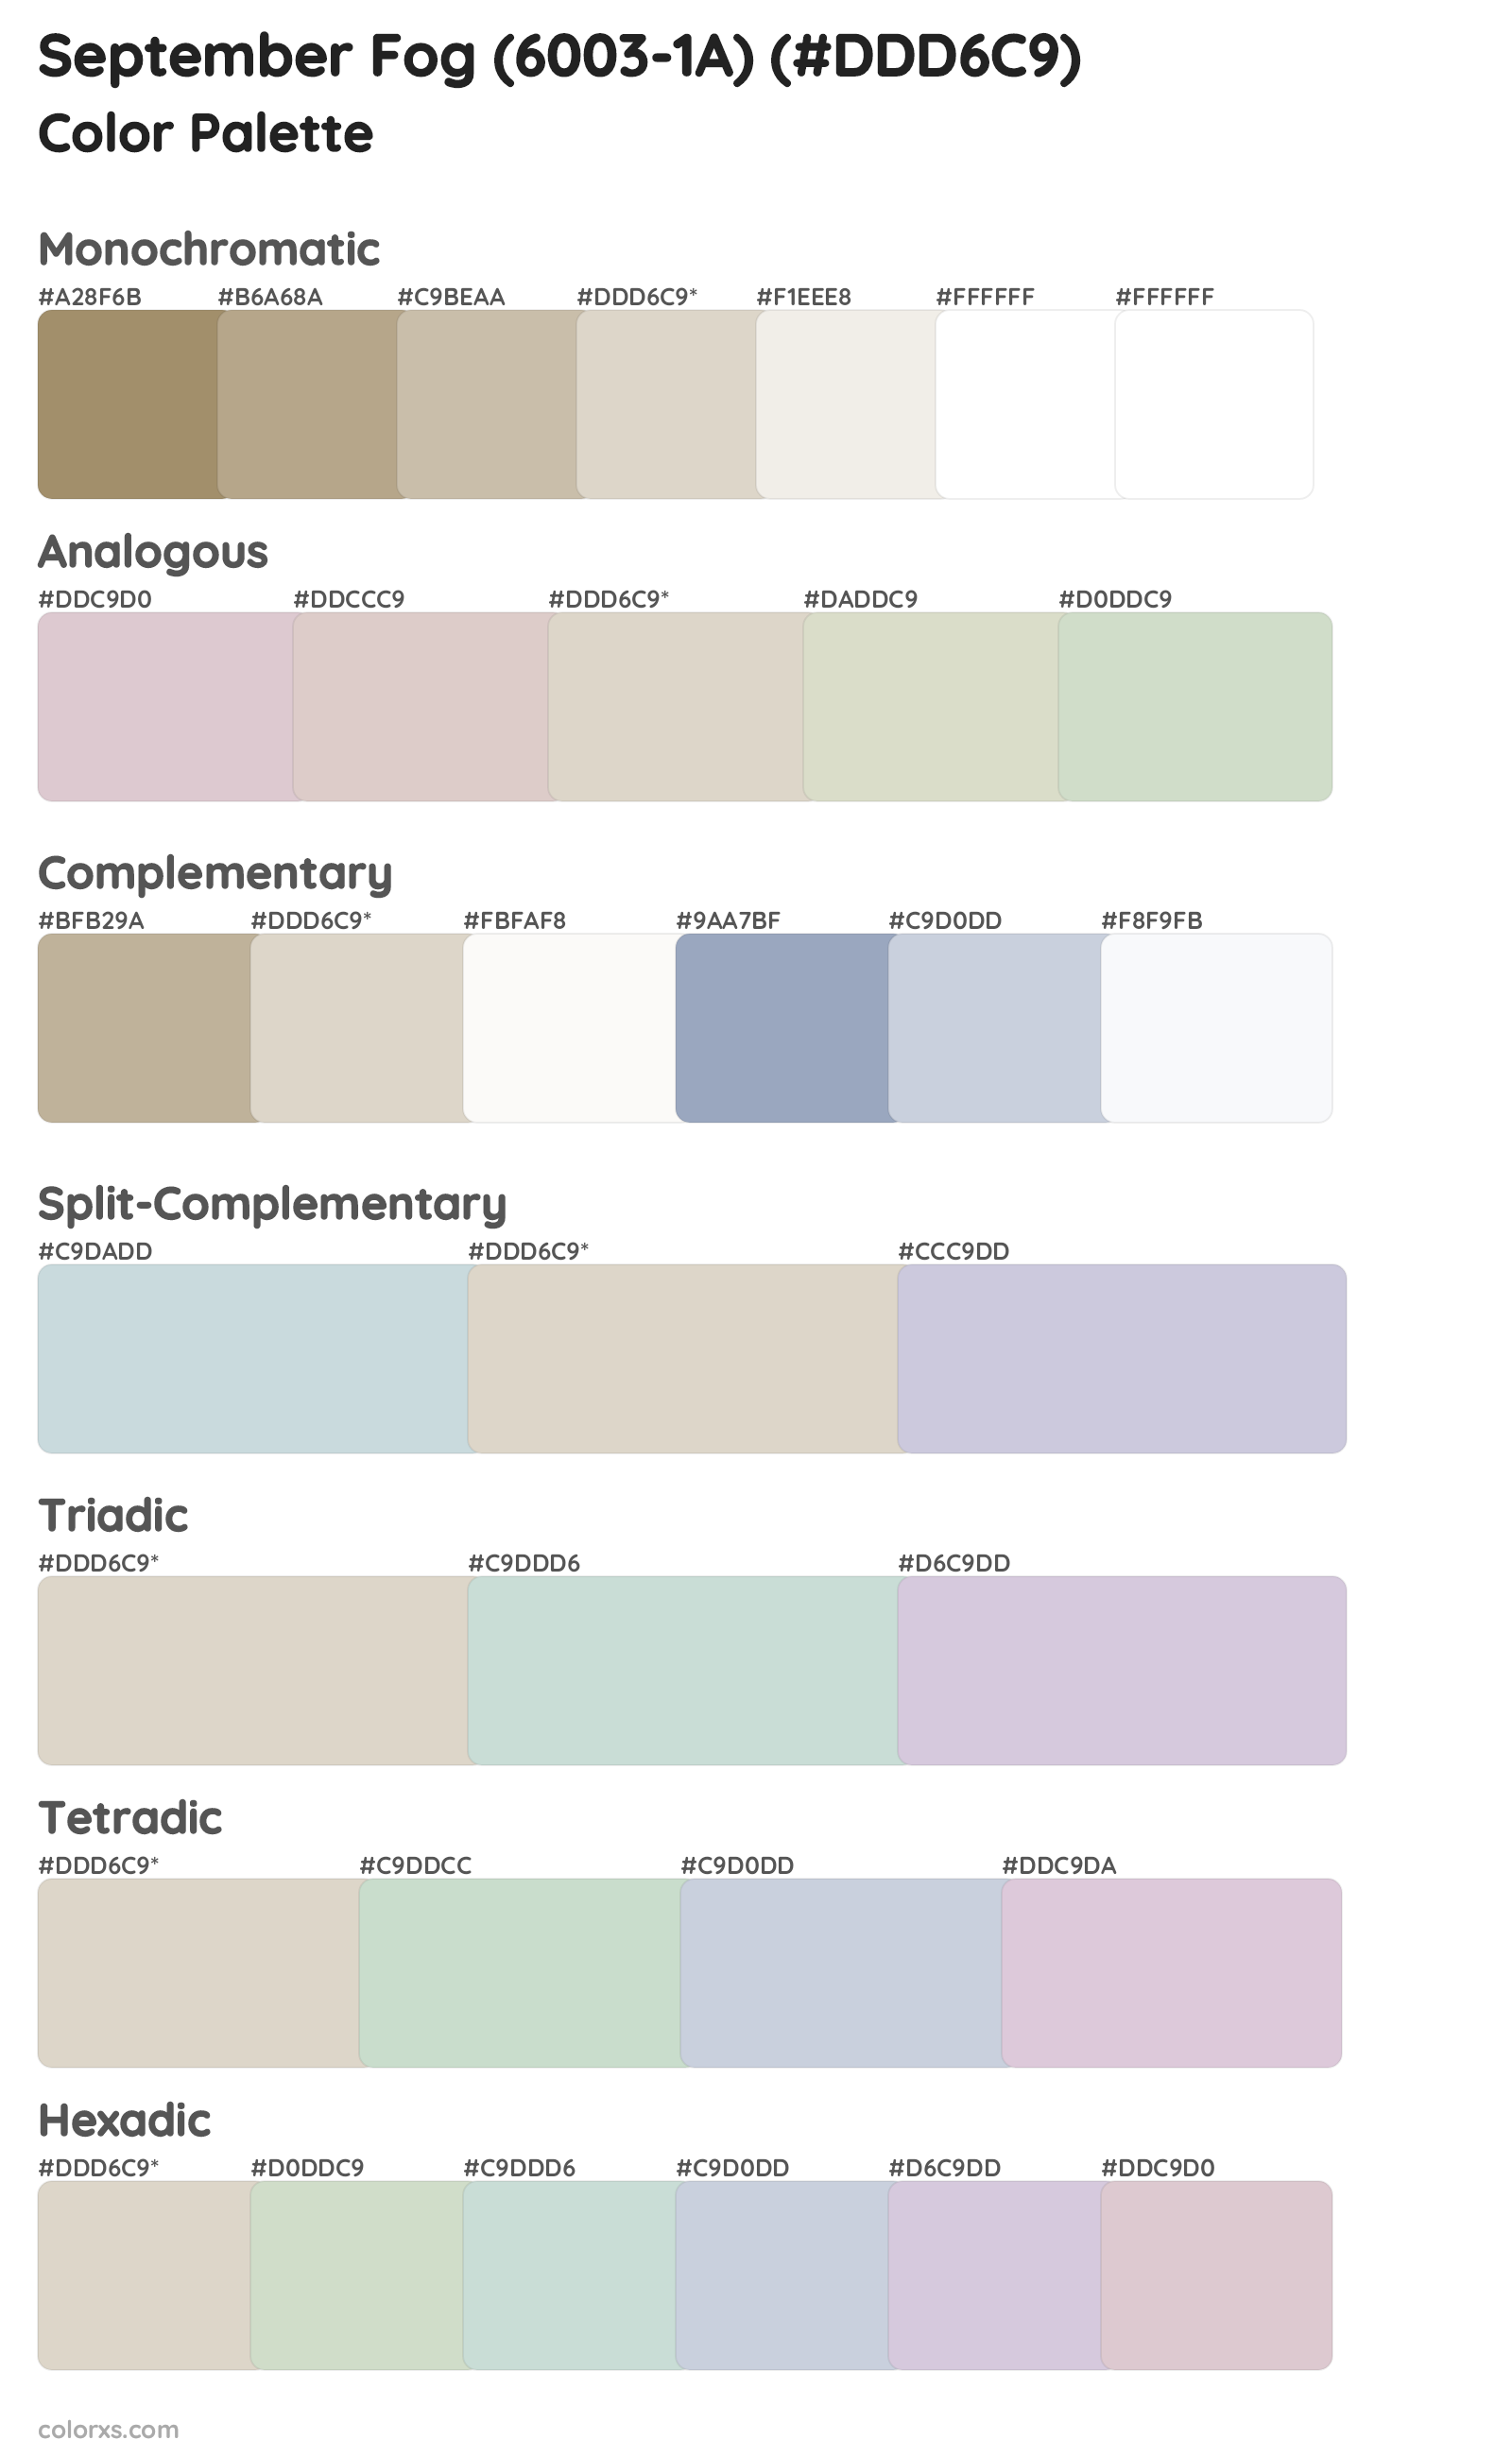 September Fog (6003-1A) Color Scheme Palettes